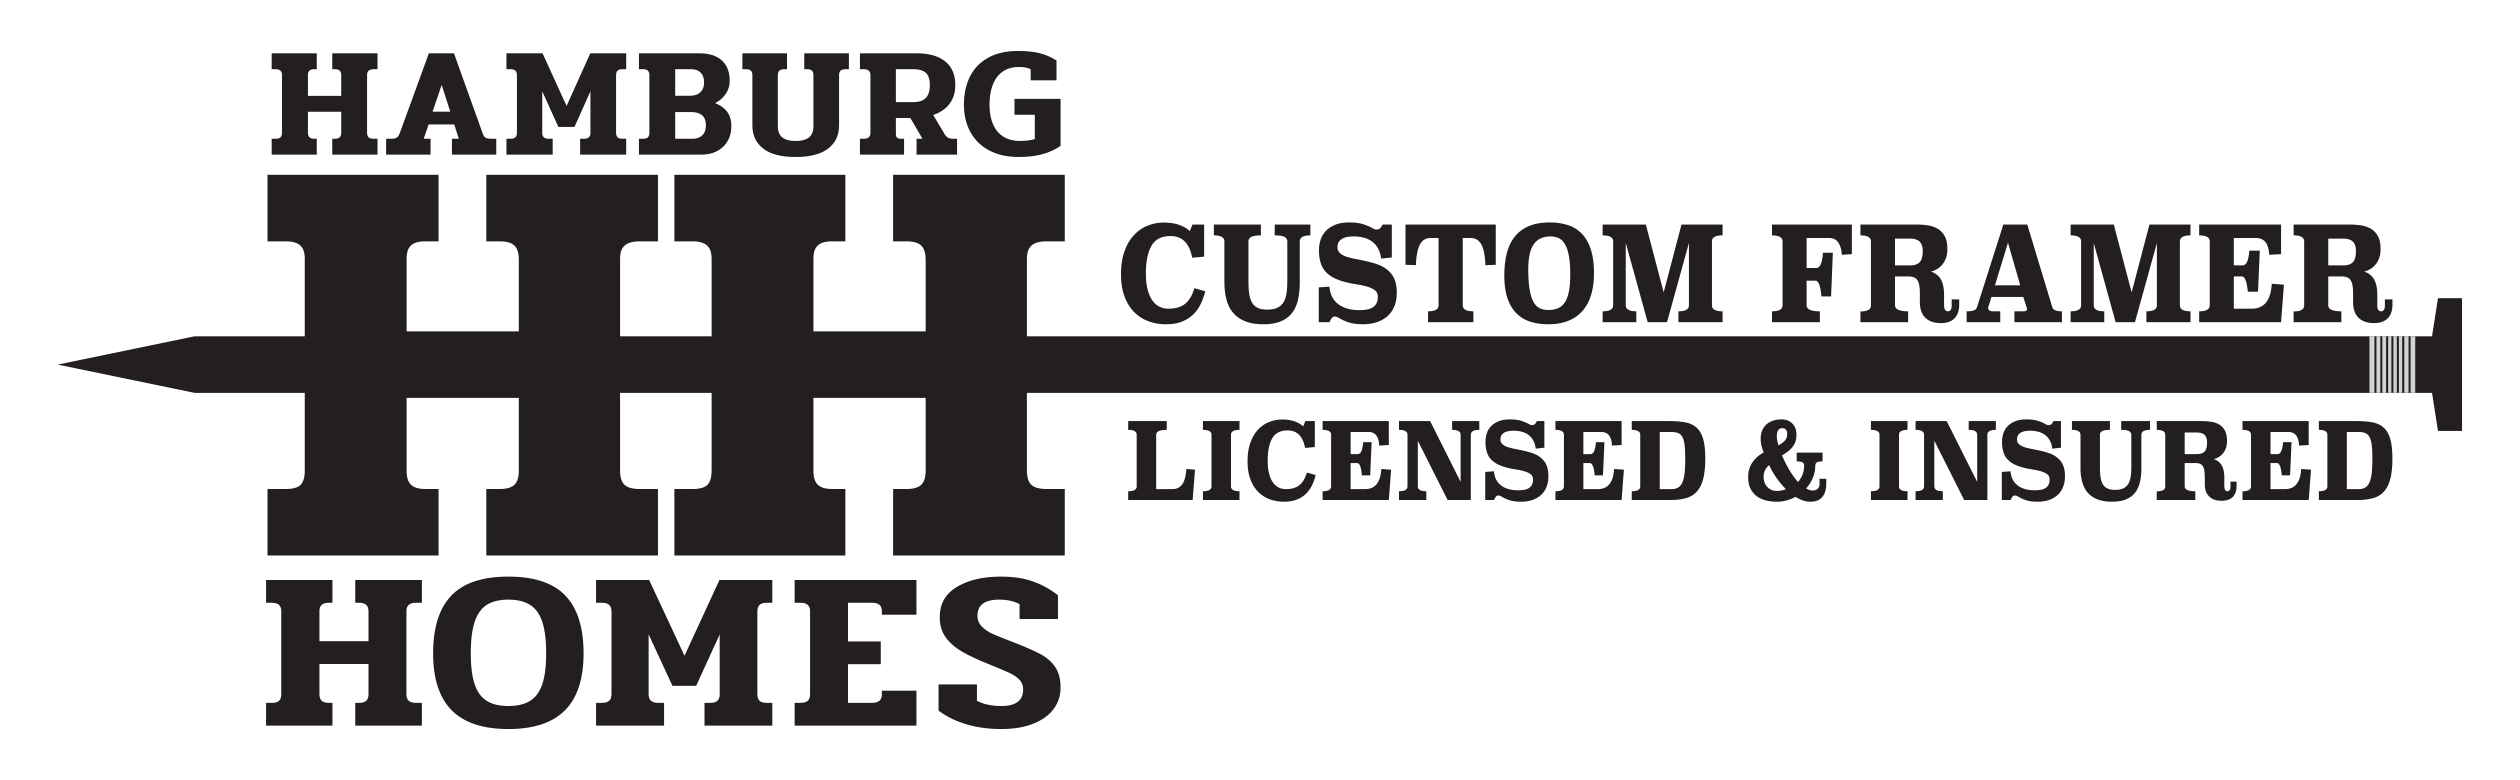 Hamburgs Homes - Custom Framer Licensed & Insured